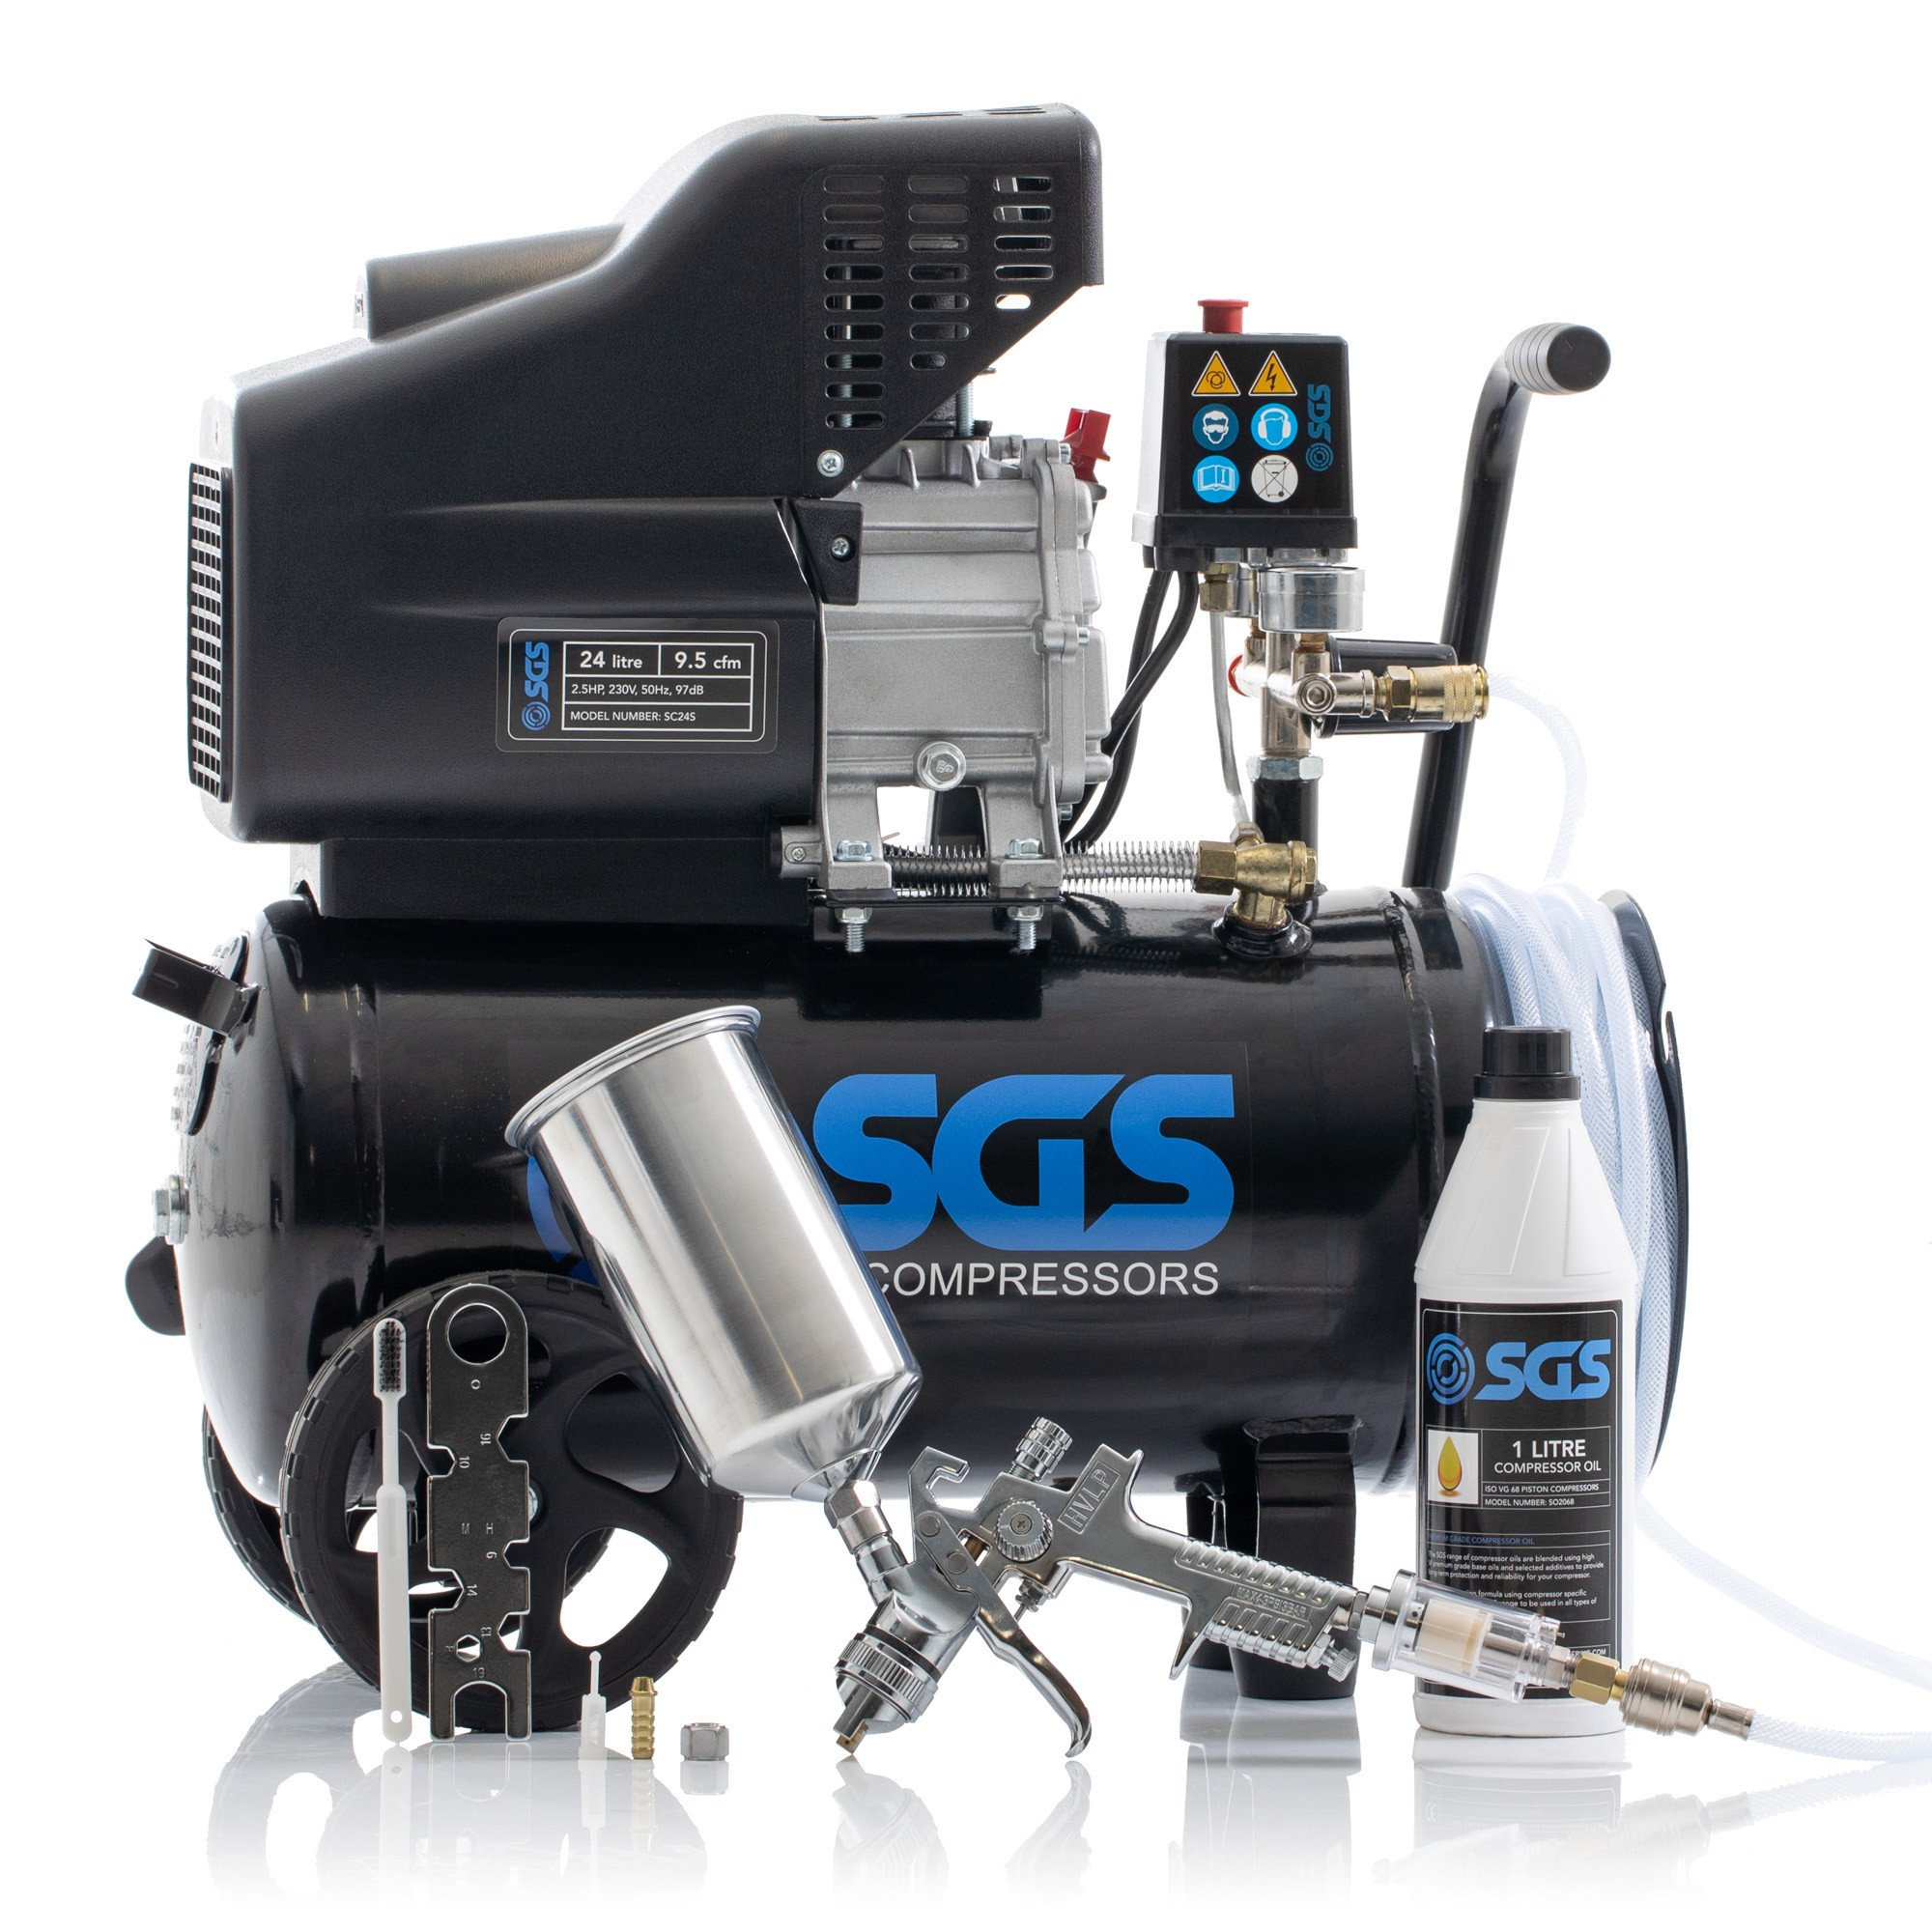 SGS 24升直接驱动空气压缩机集成软管卷盘&喷枪工具2.5 - 9.5 cfm惠普24 l